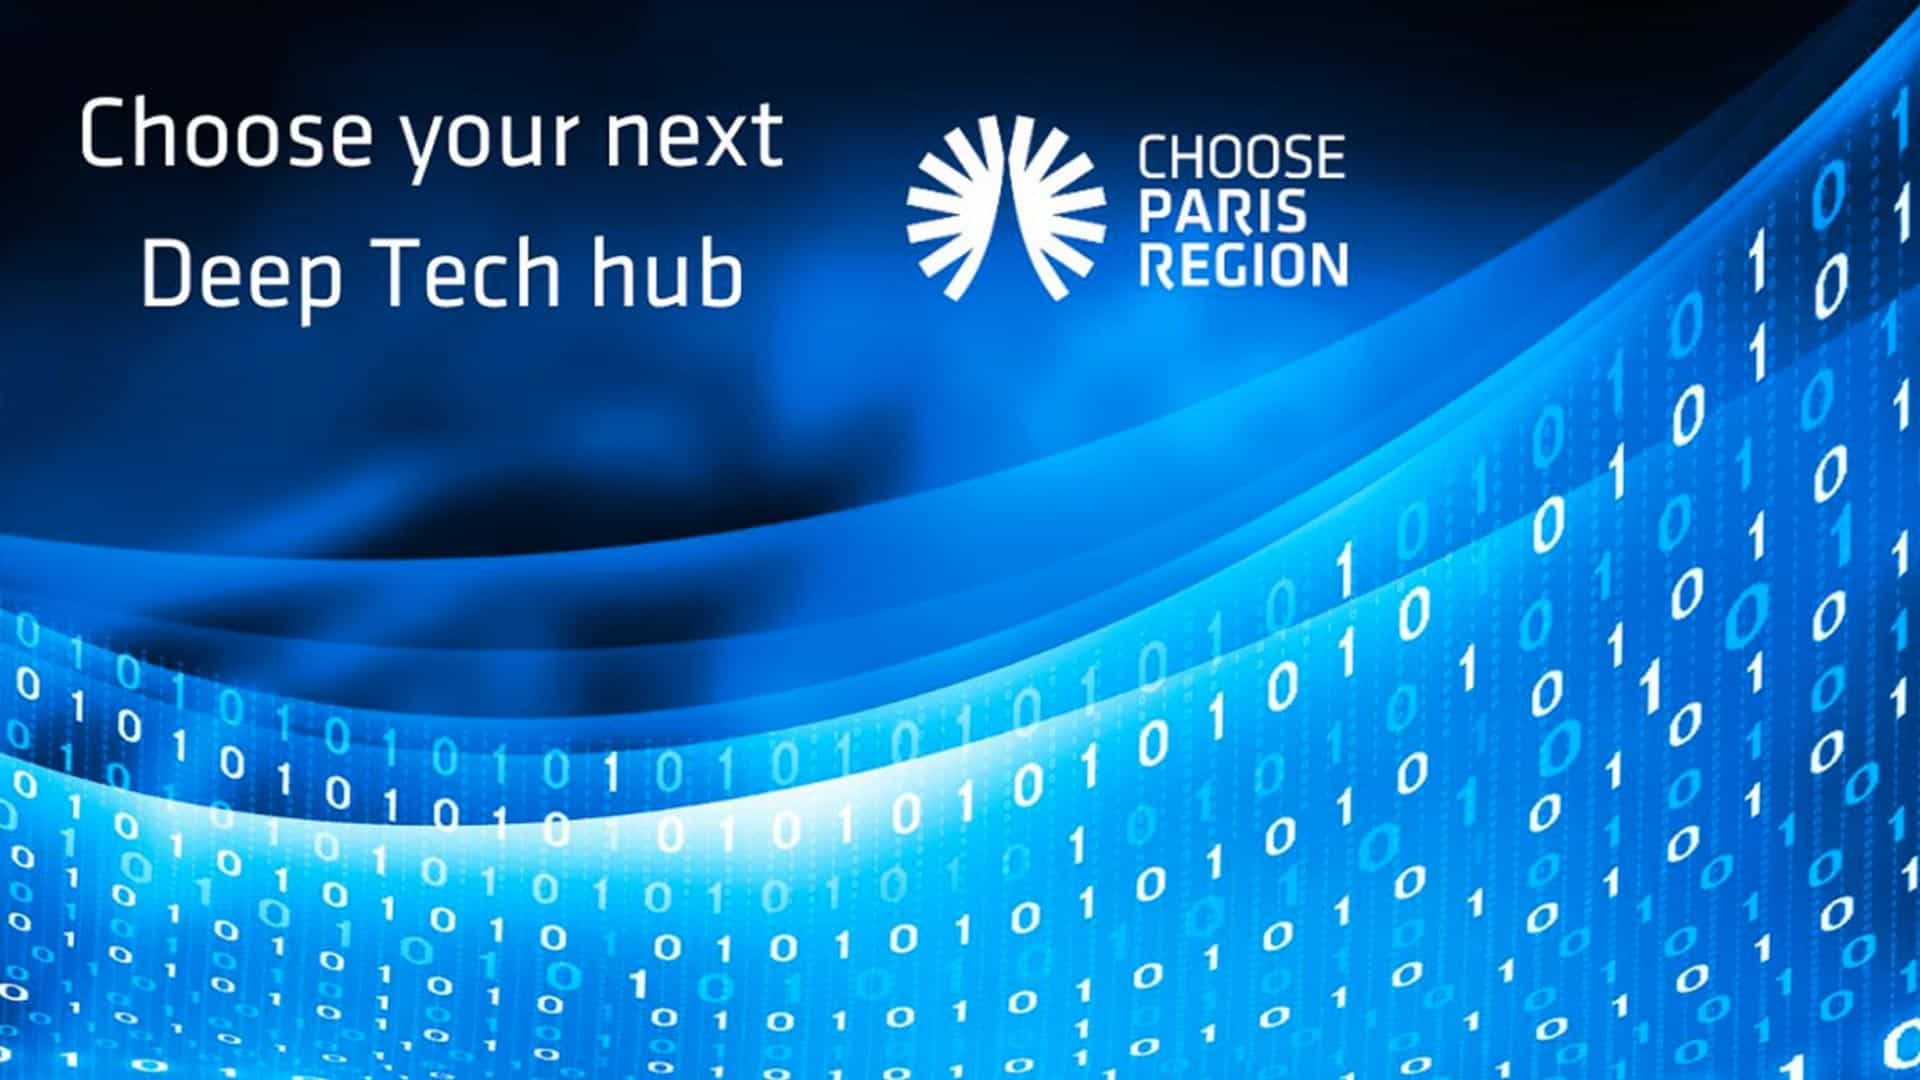 Een veelbelovende toekomst voor DeepTech  in de Parijse regio